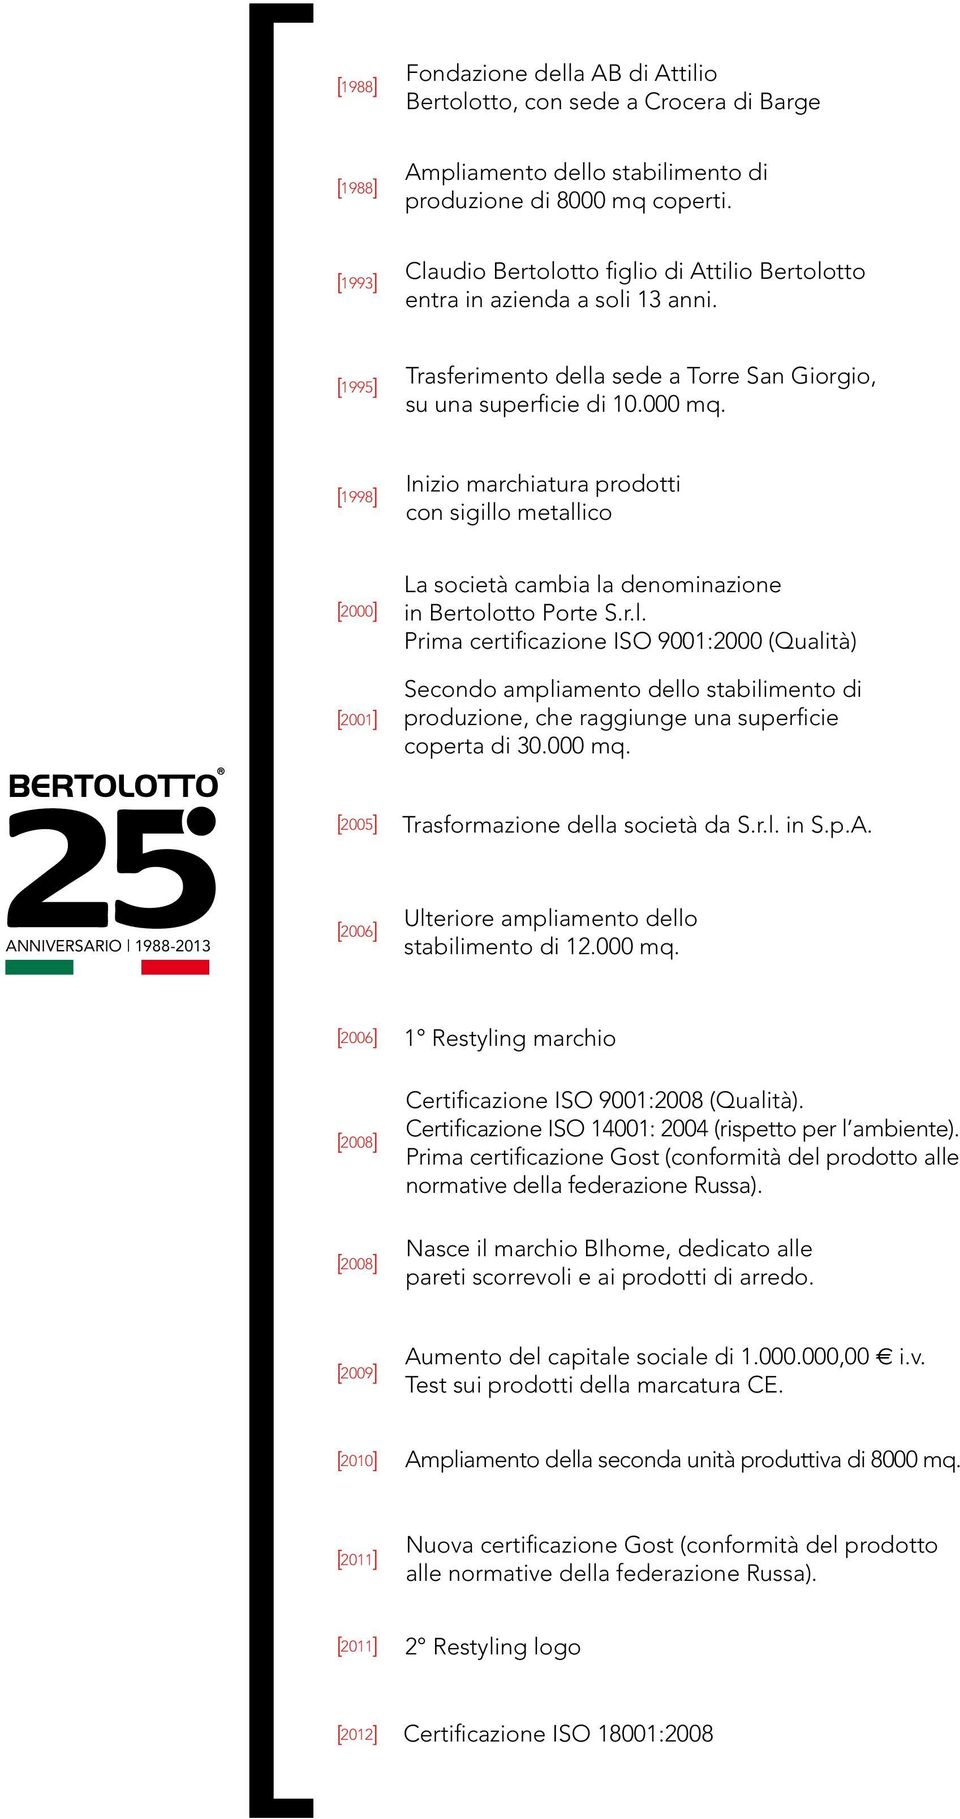 1998 Inizio marchiatura prodotti con sigillo metallico 2000 2001 La società cambia la denominazione in Bertolotto Porte S.r.l. Prima certificazione ISO 9001:2000 (Qualità) Secondo ampliamento dello stabilimento di produzione, che raggiunge una superficie coperta di 30.